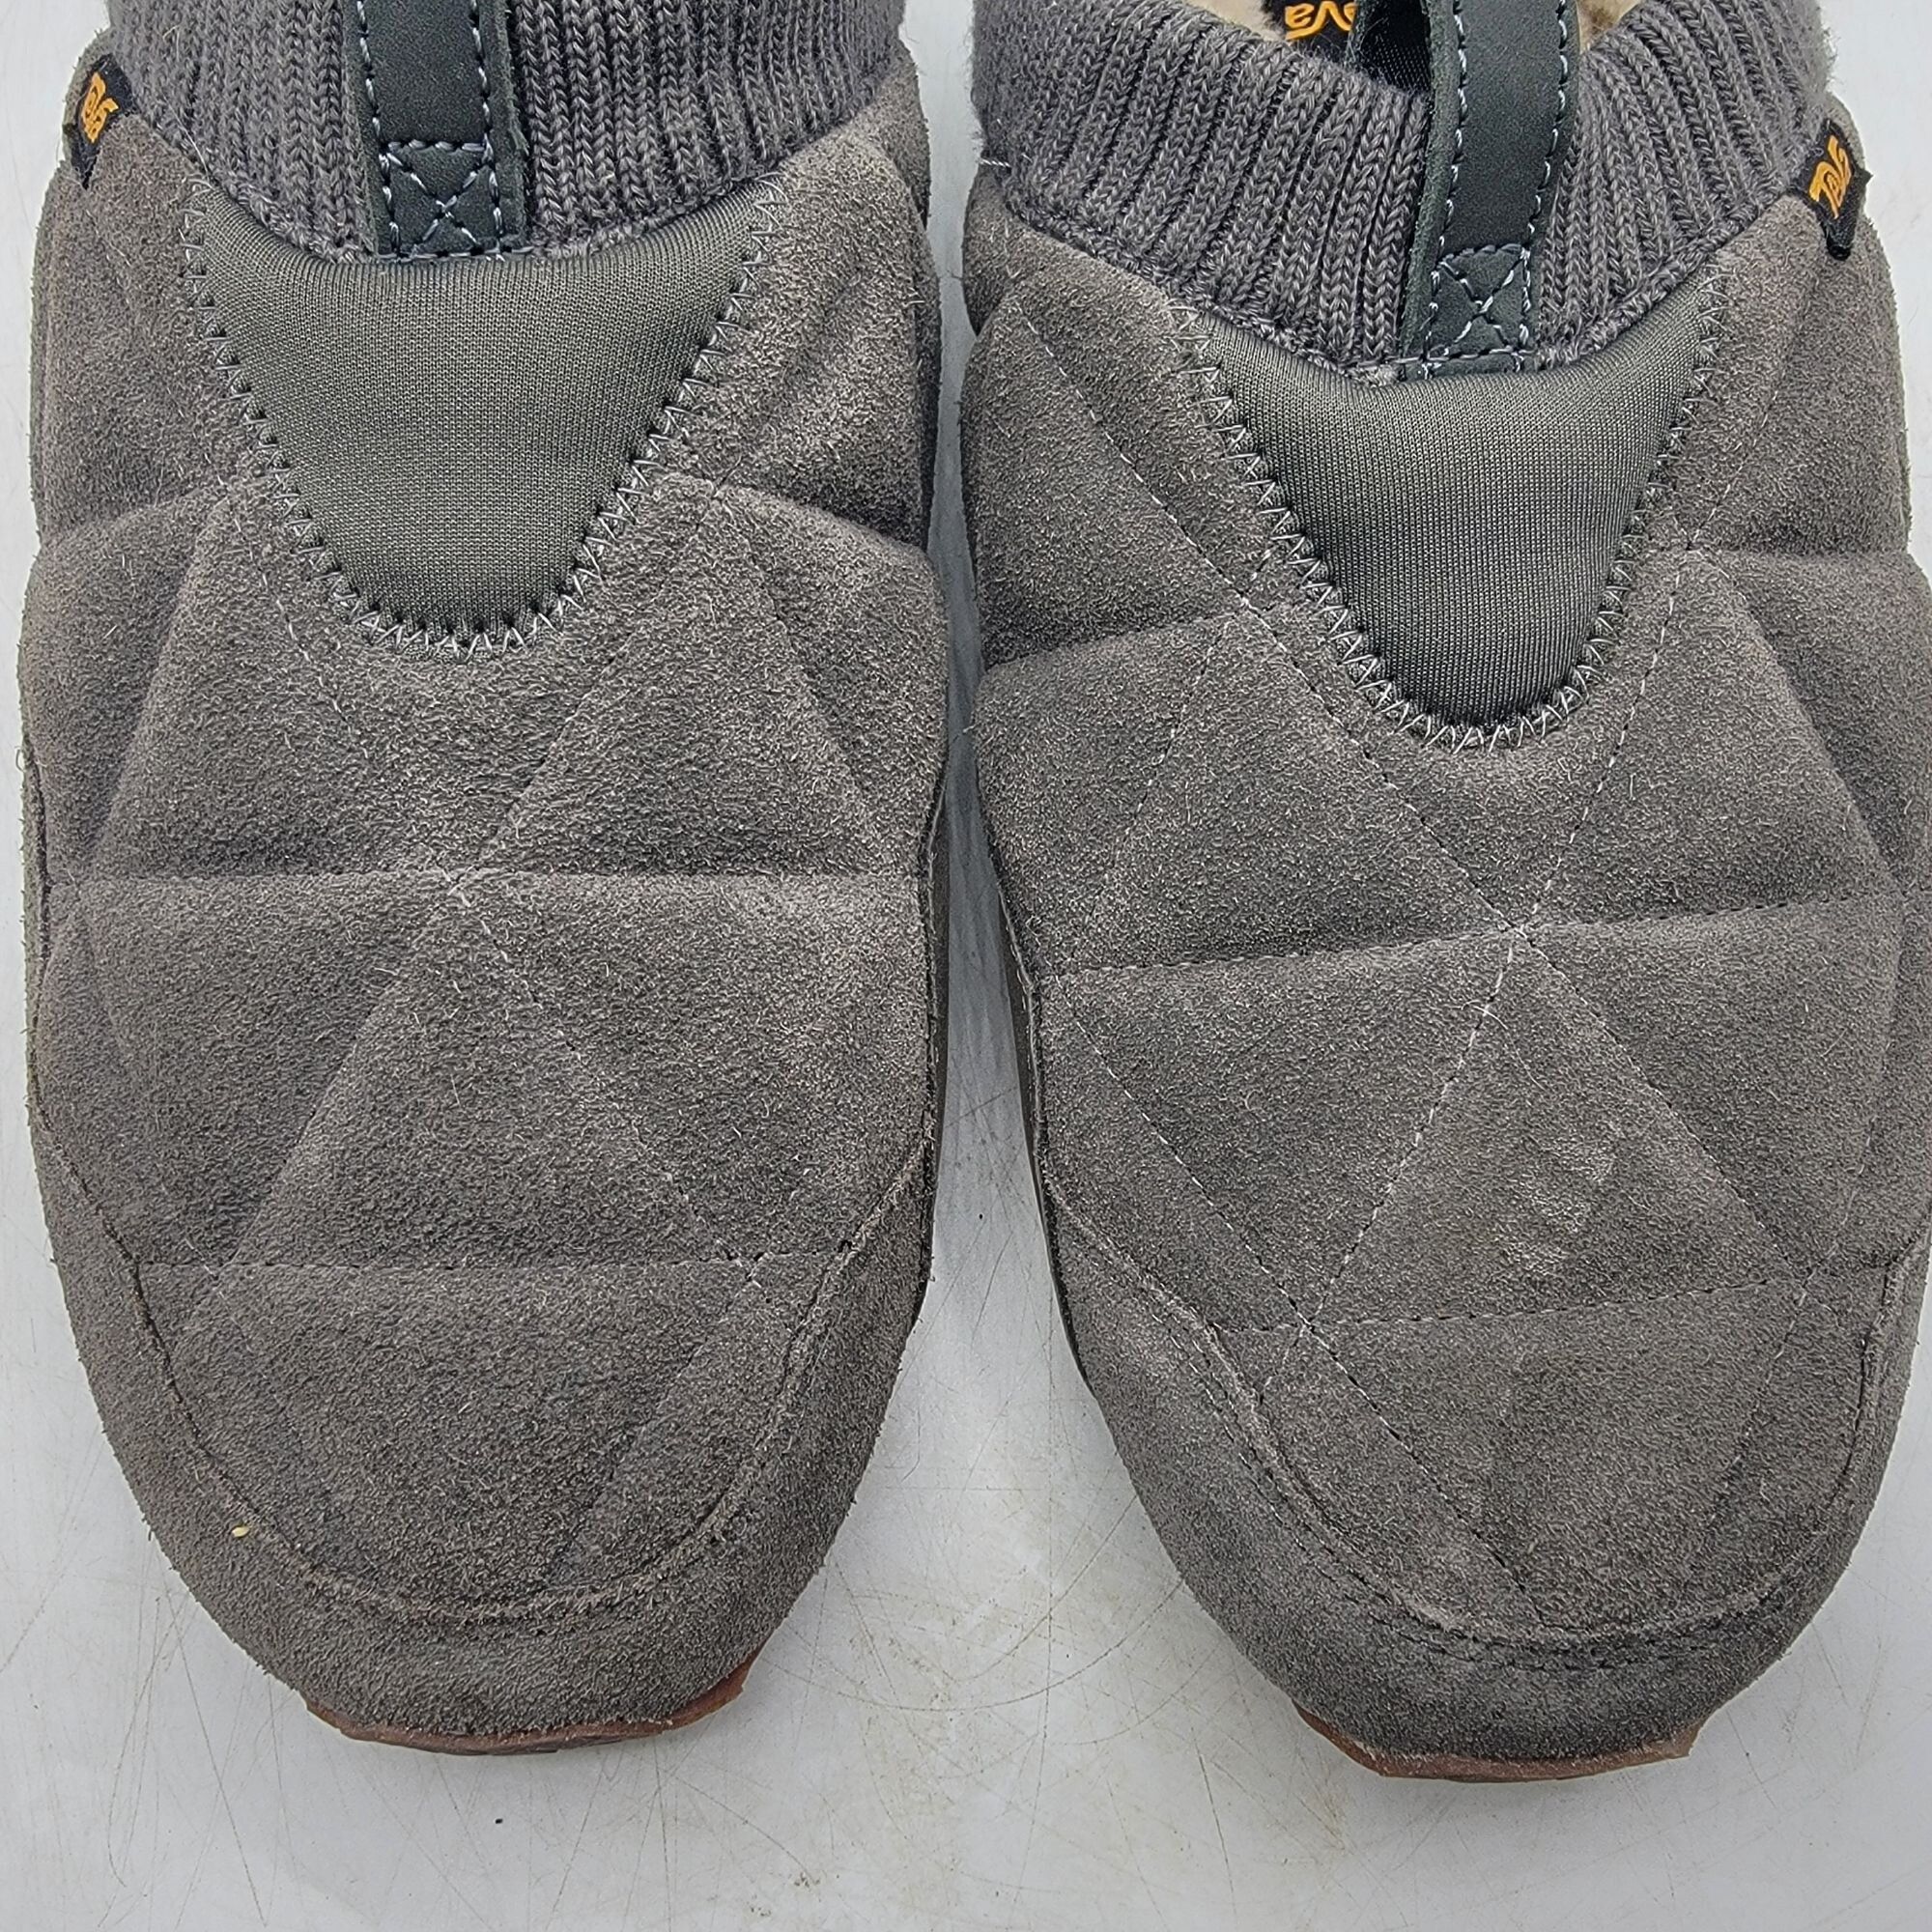 Teva Teva ReEmber Plushed Mens 11 Gray Slipper Shoes Comfort Line Size US 11 / EU 44 - 12 Thumbnail